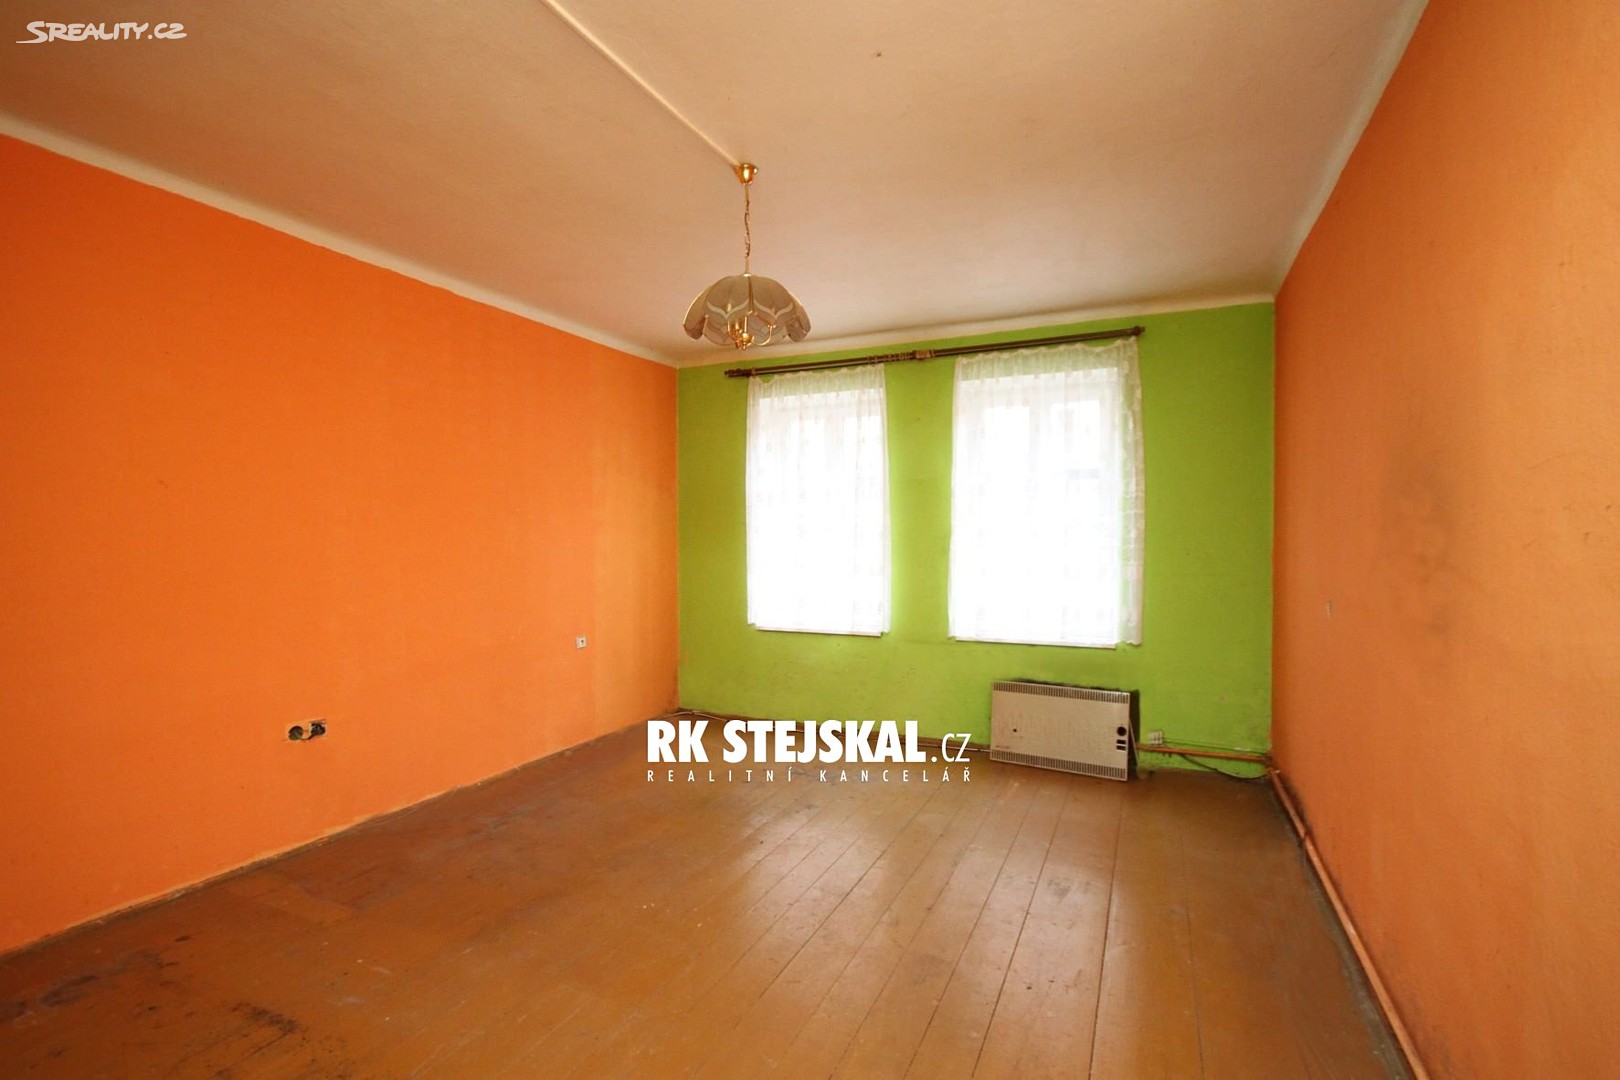 Prodej bytu 2+kk 49 m², Jindřichův Hradec - Jindřichův Hradec II, okres Jindřichův Hradec